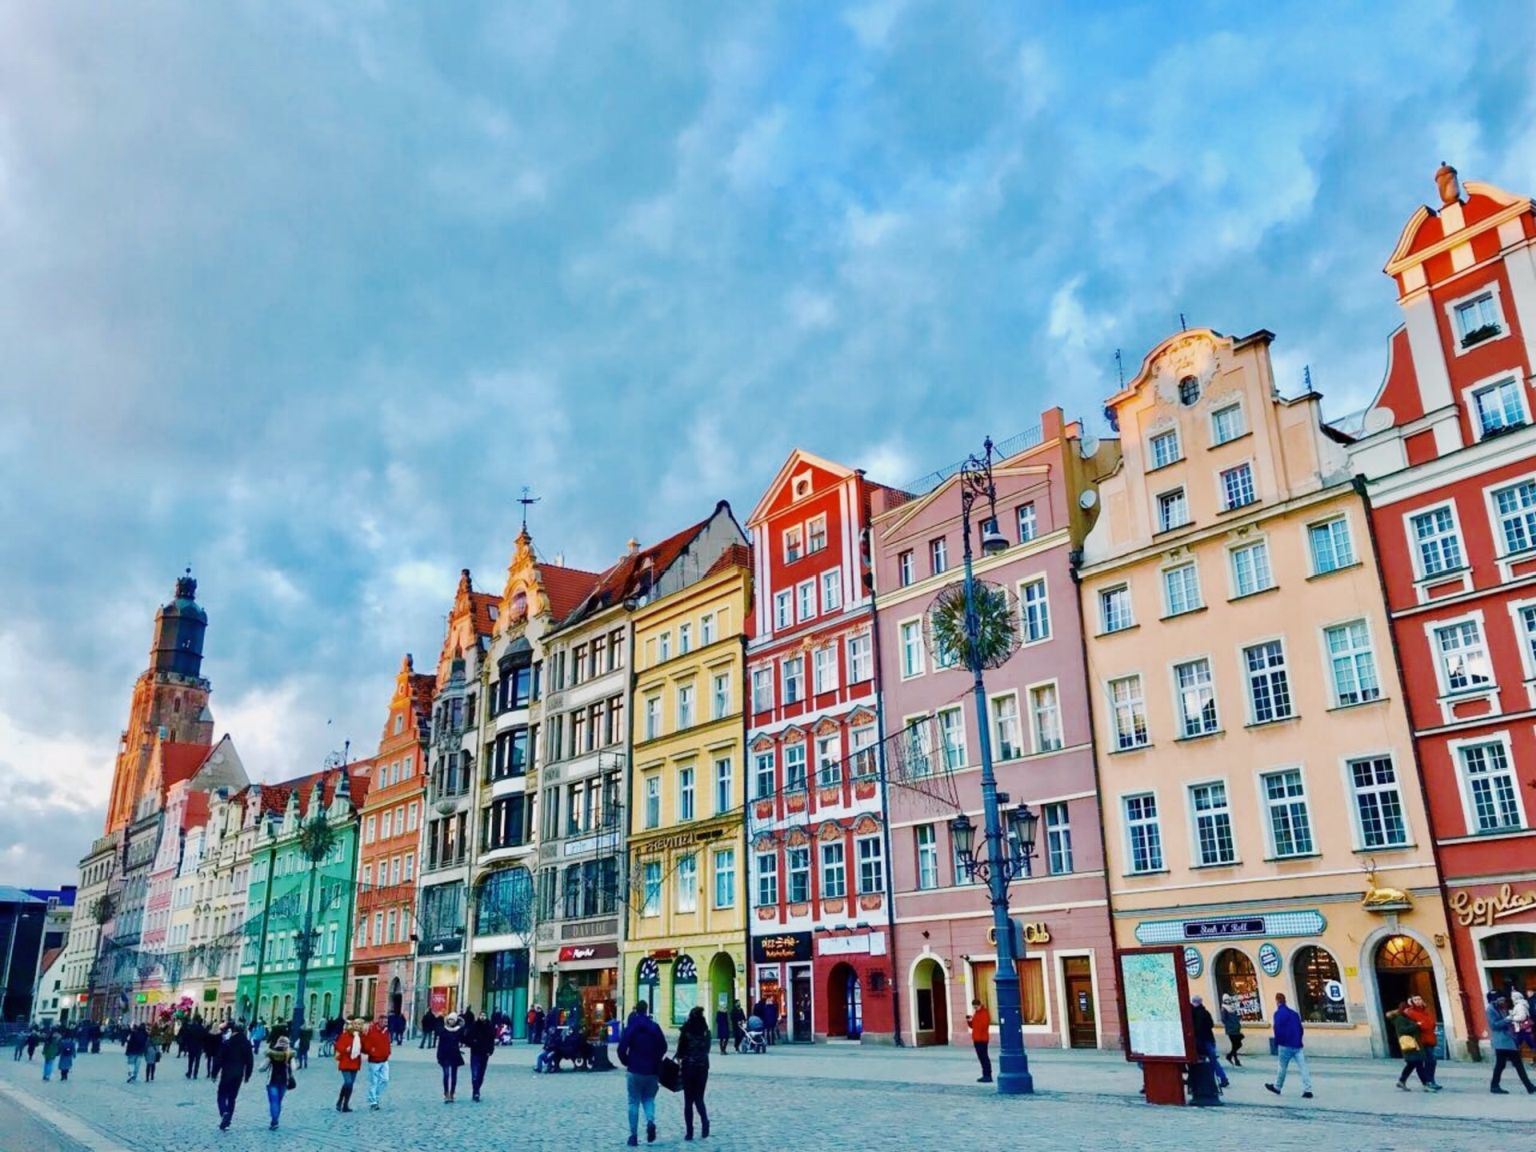 PR-Agentur Wrocław – wie wählt man richtig?